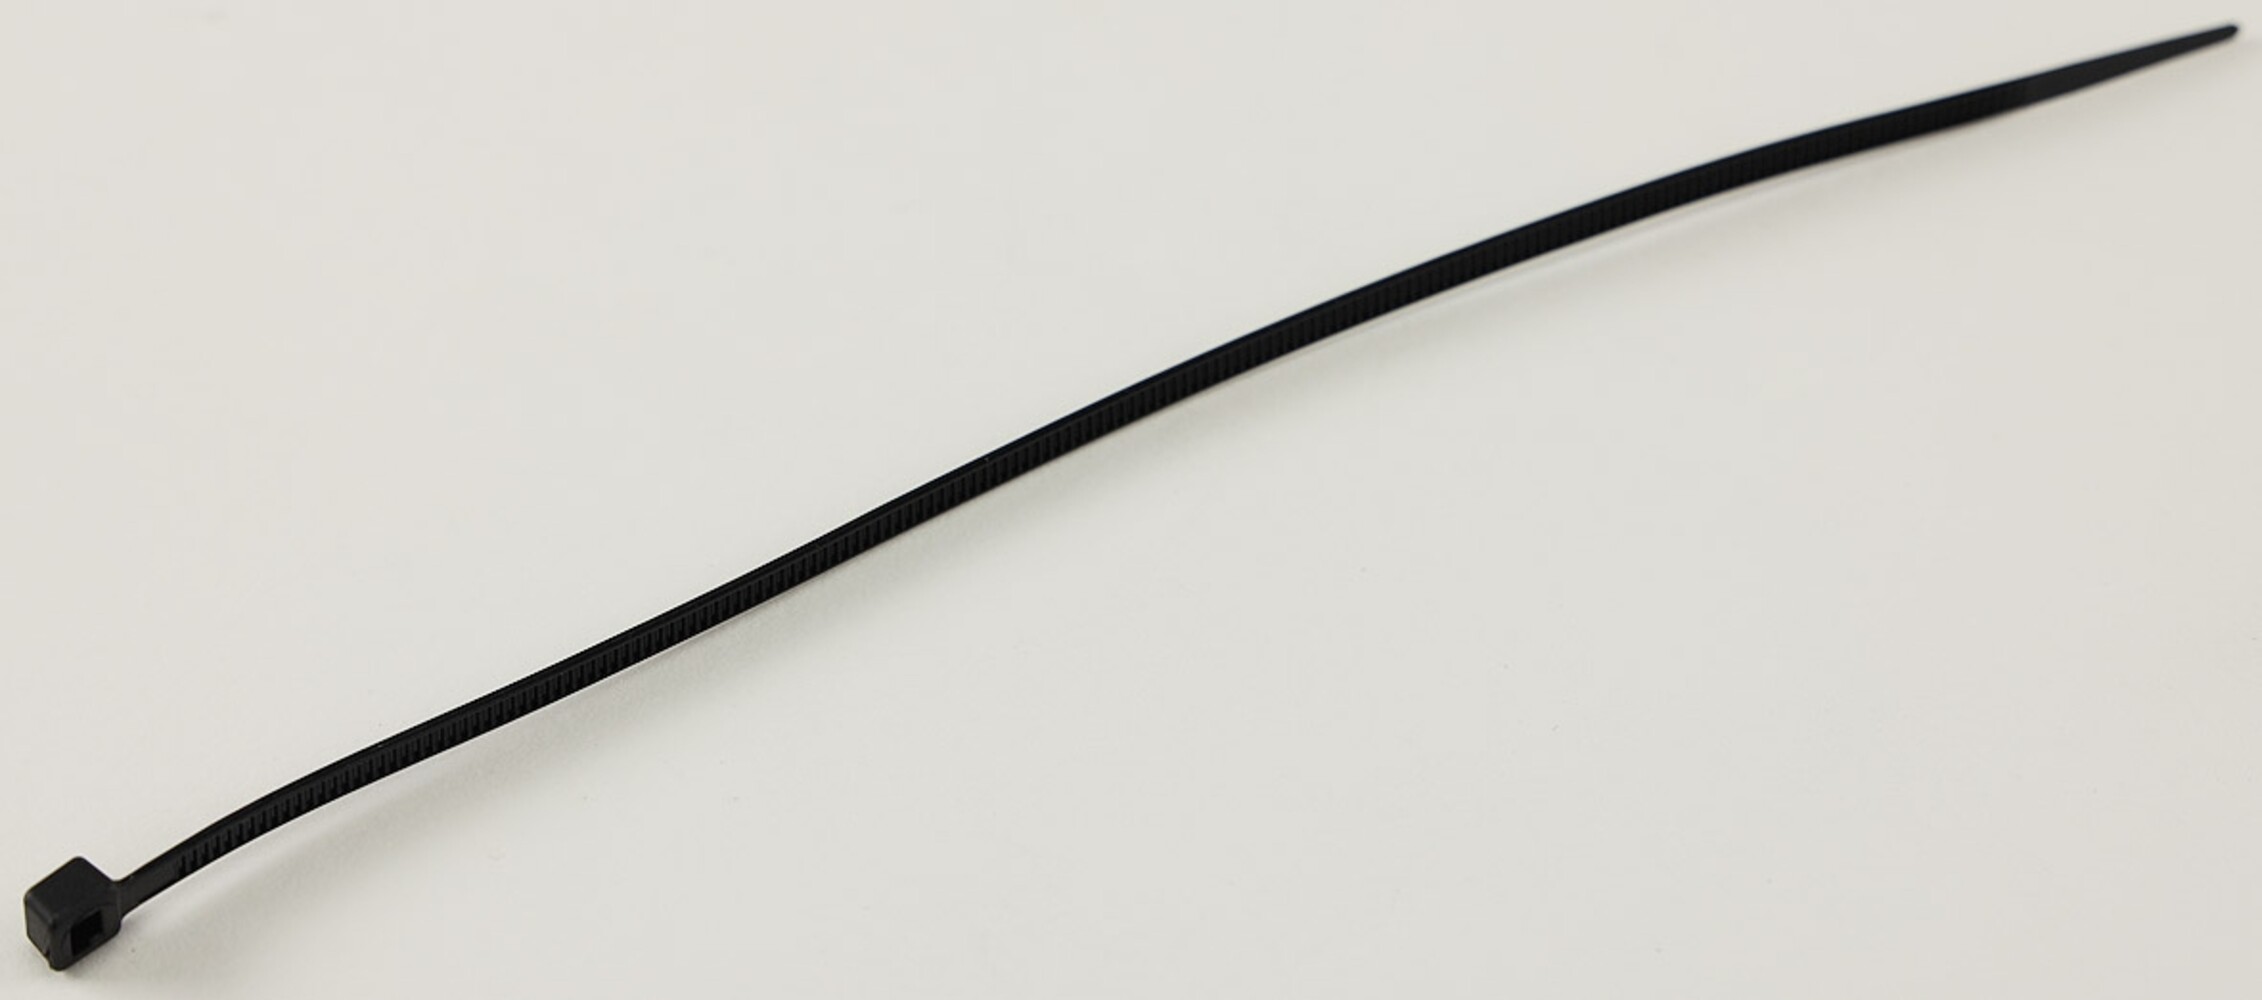 Robuste schwarze Kabelbinder von Chilitec mit hoher Zugkraft.